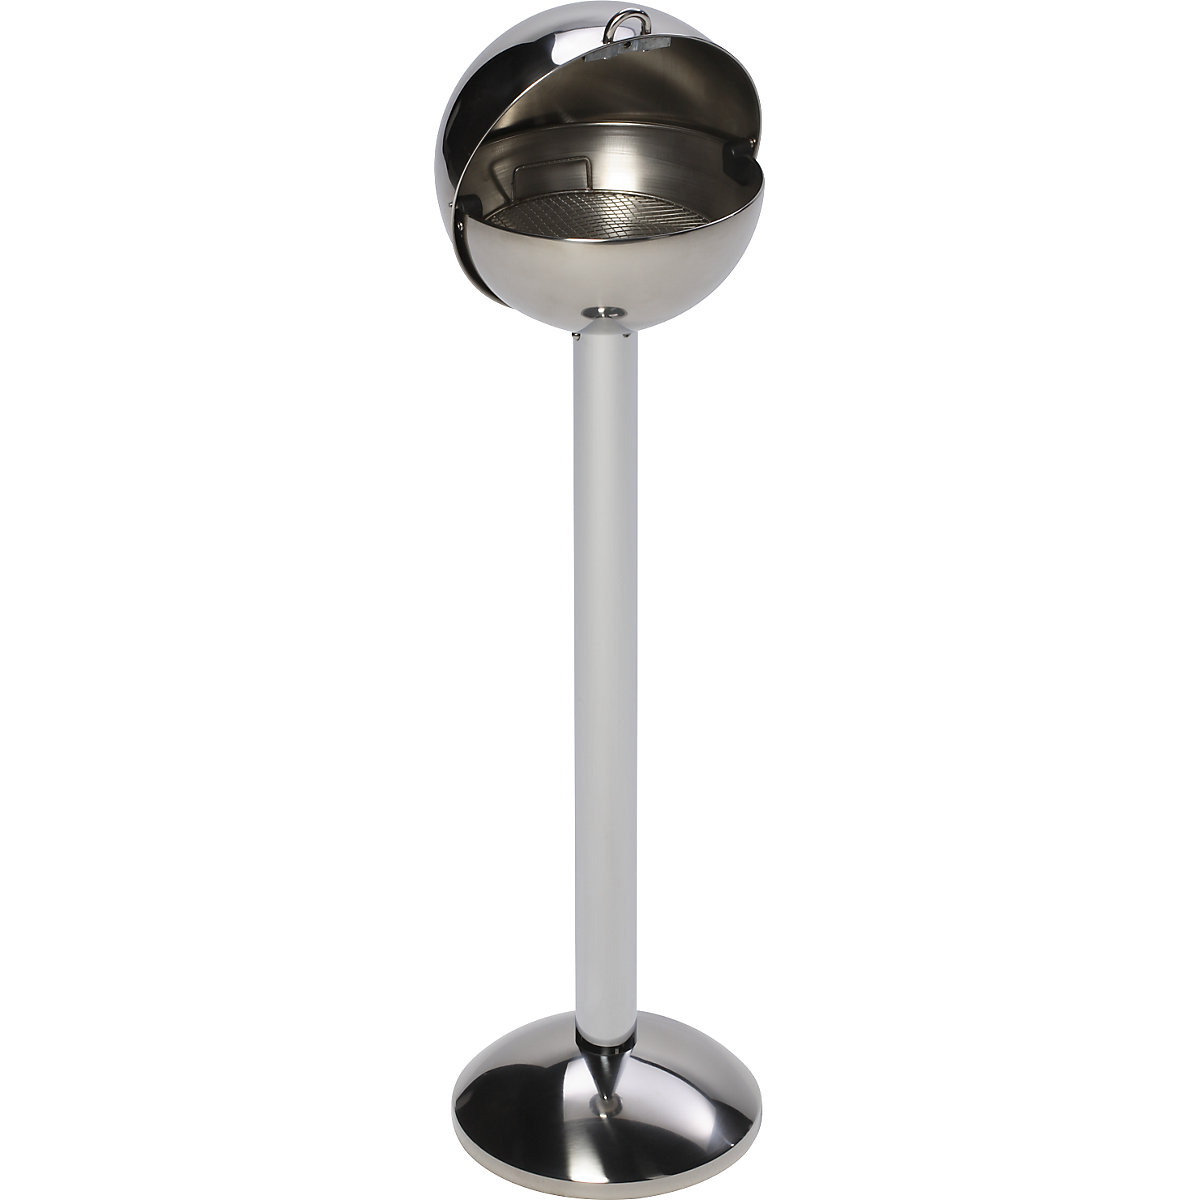 Spherical pedestal ashtray made of stainless steel – VAR